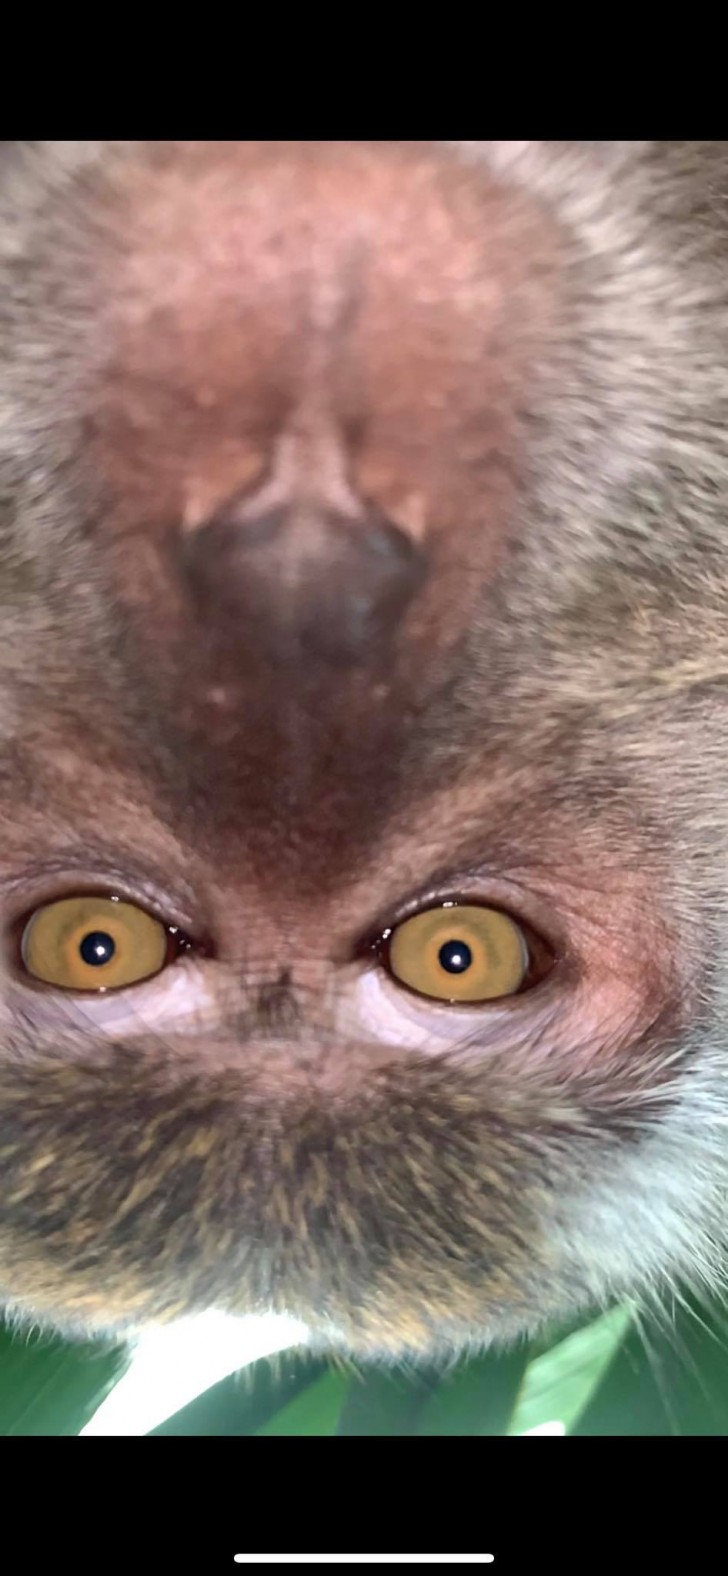 Les singes ont-ils donc compris comment prendre des photos ?